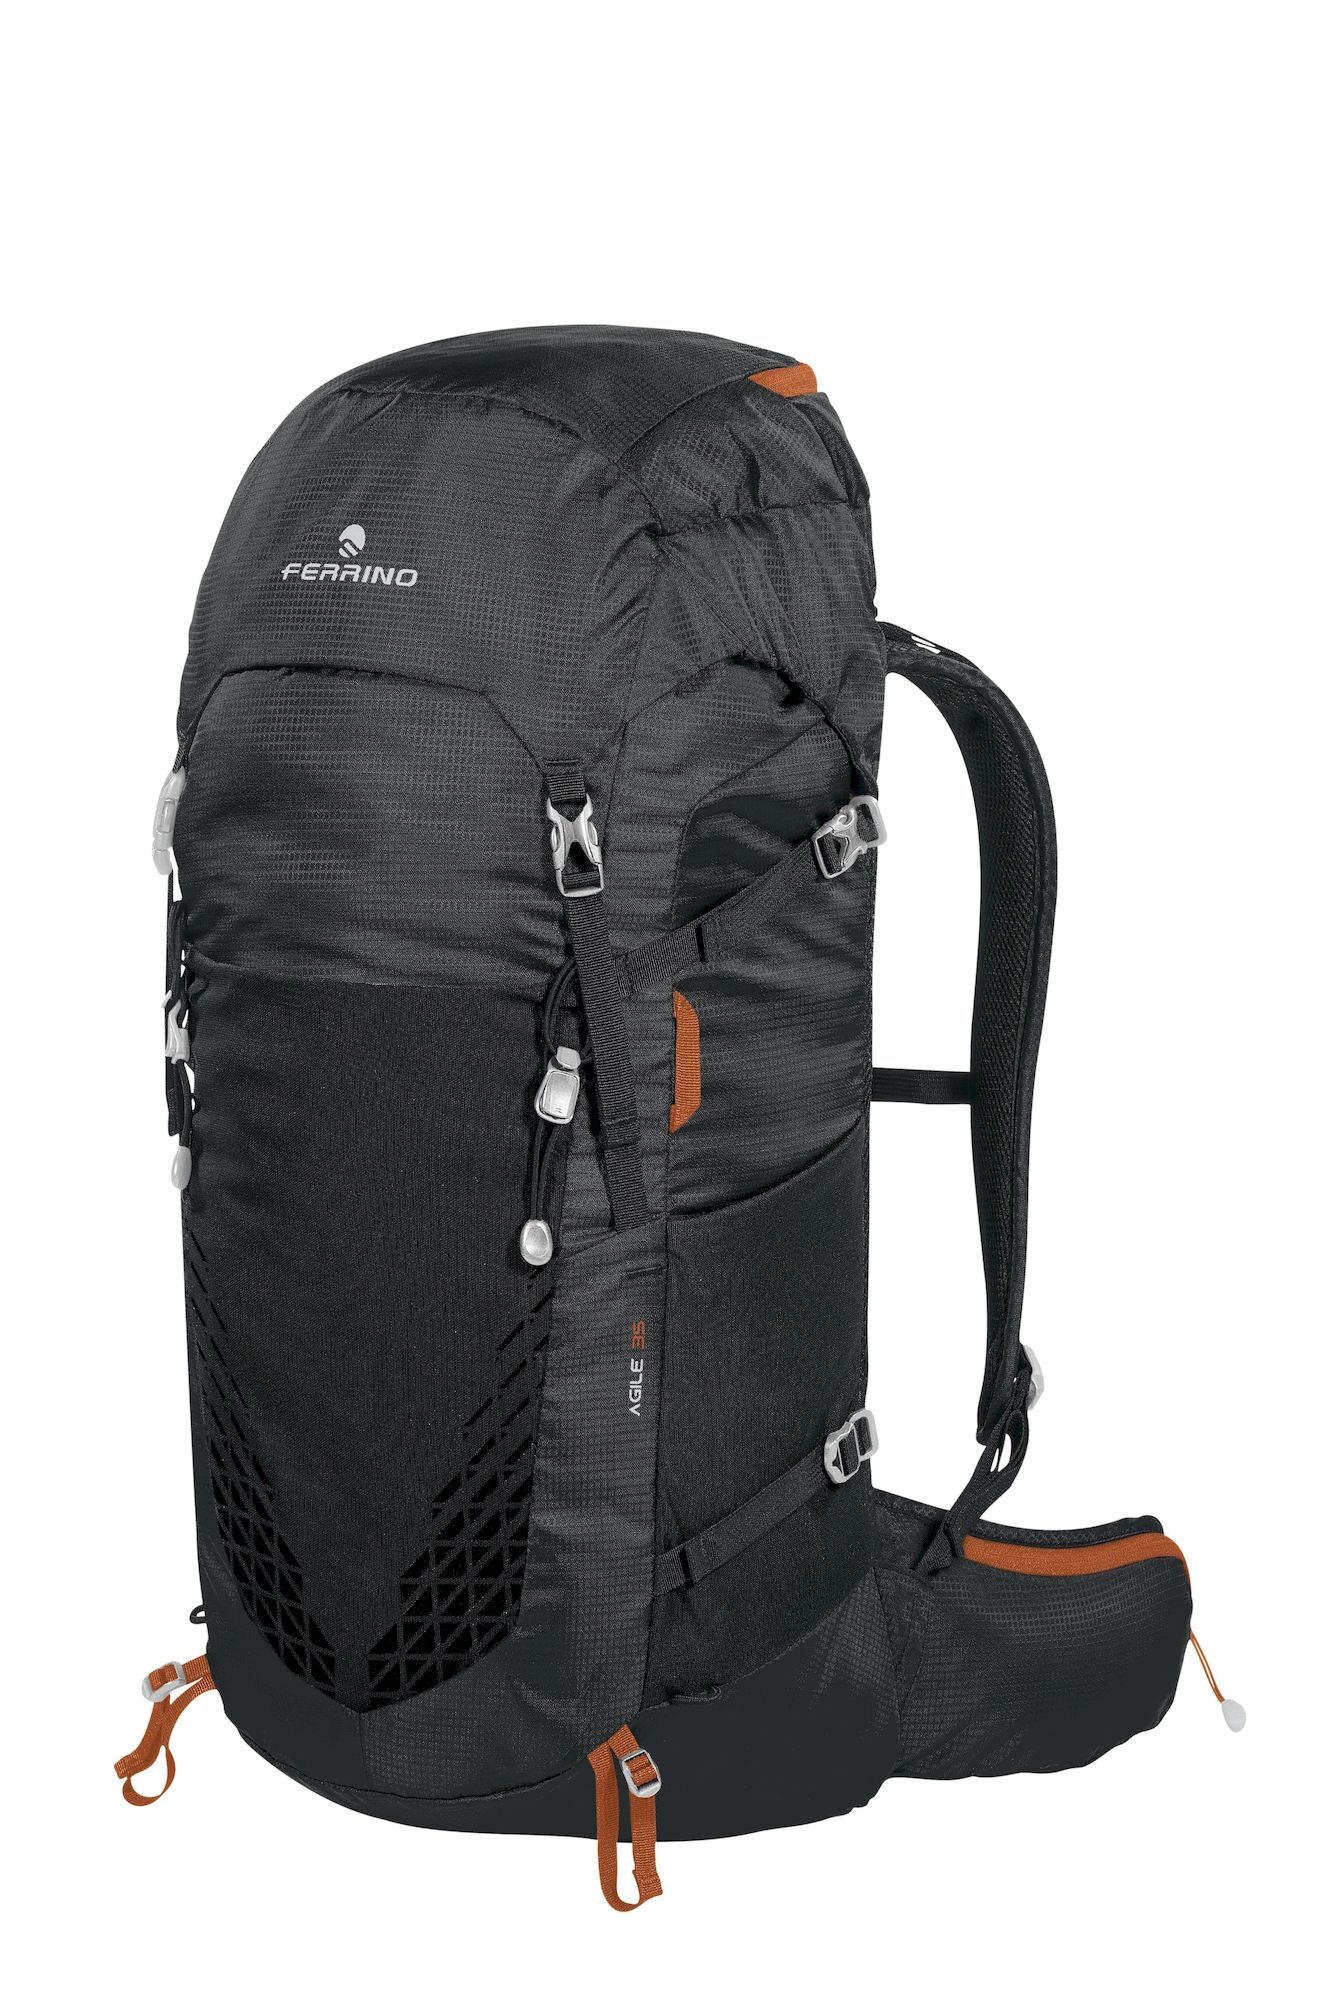 Ferrino Agile 35 - Hiking backpack